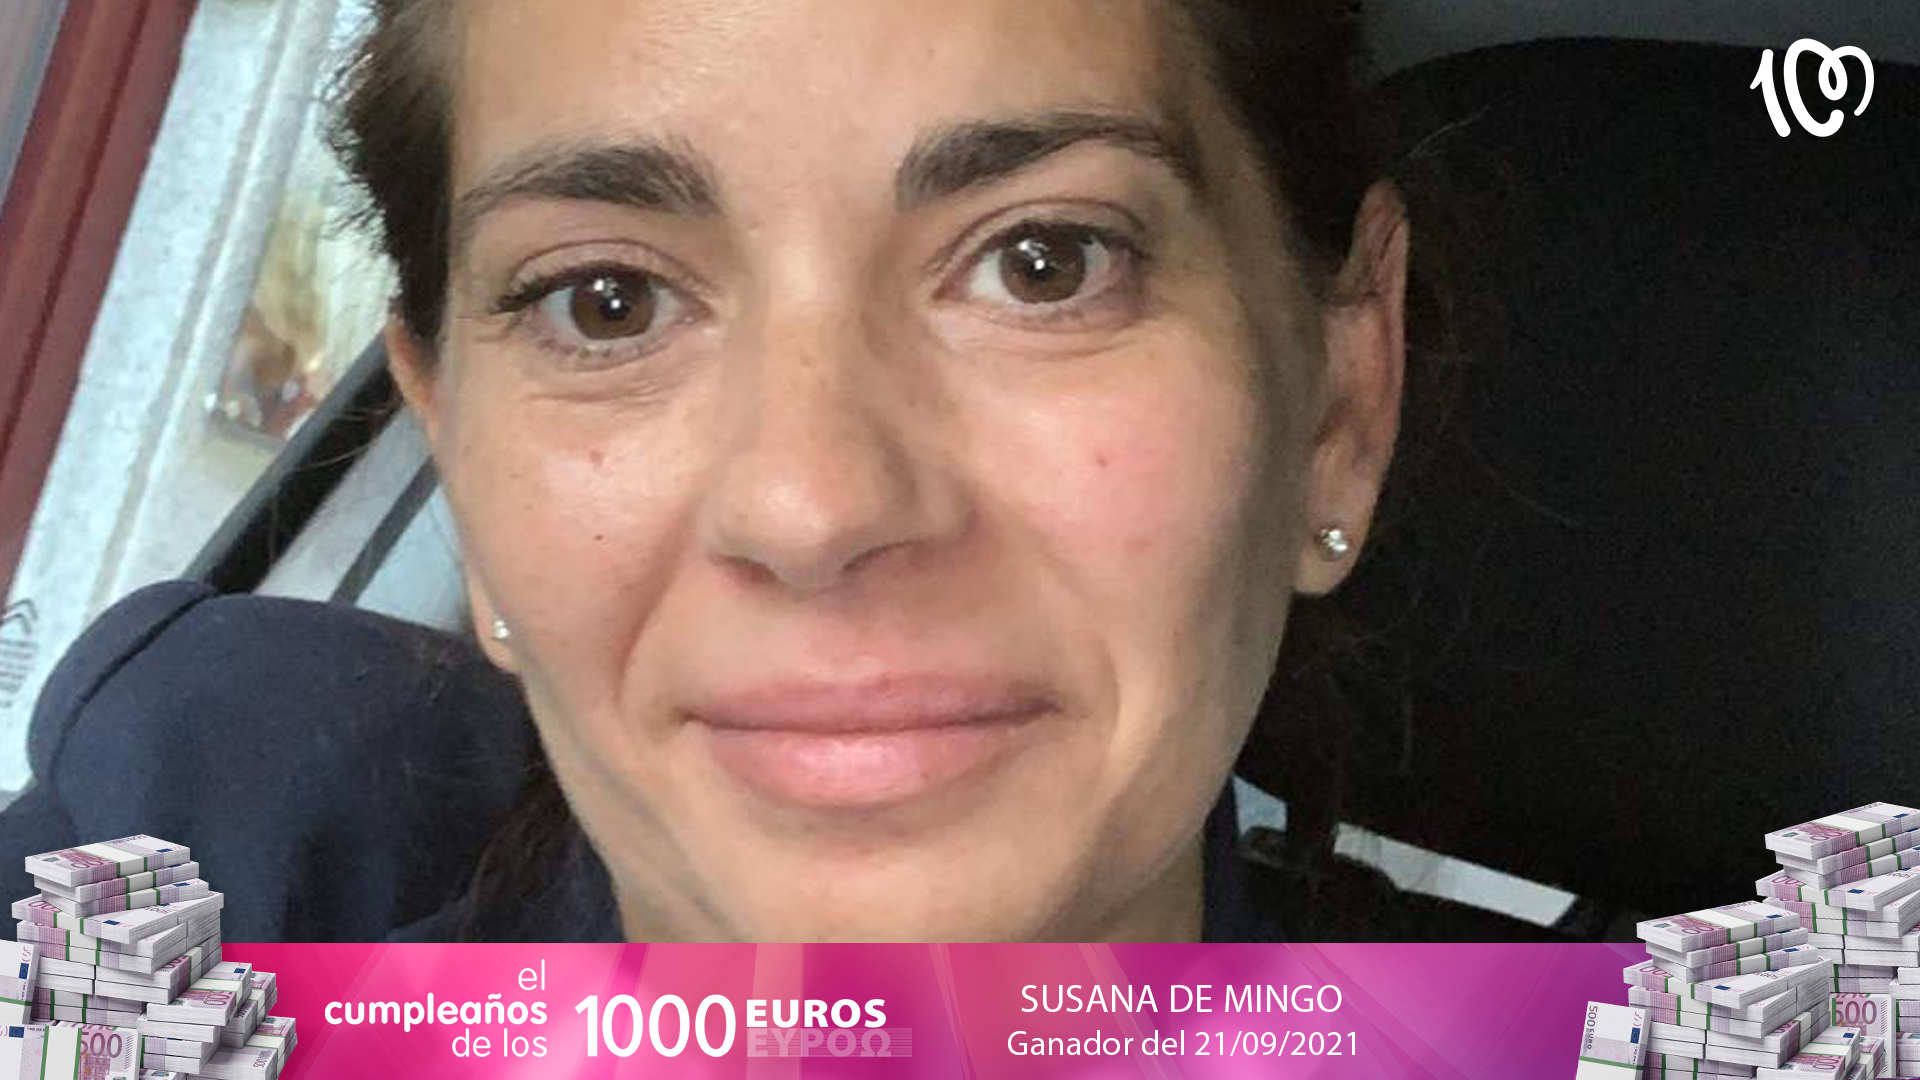 Susana de Mingo, ganadora de 1.000 euros: "Ha sido cuestión de suerte: ¡a la primera!"